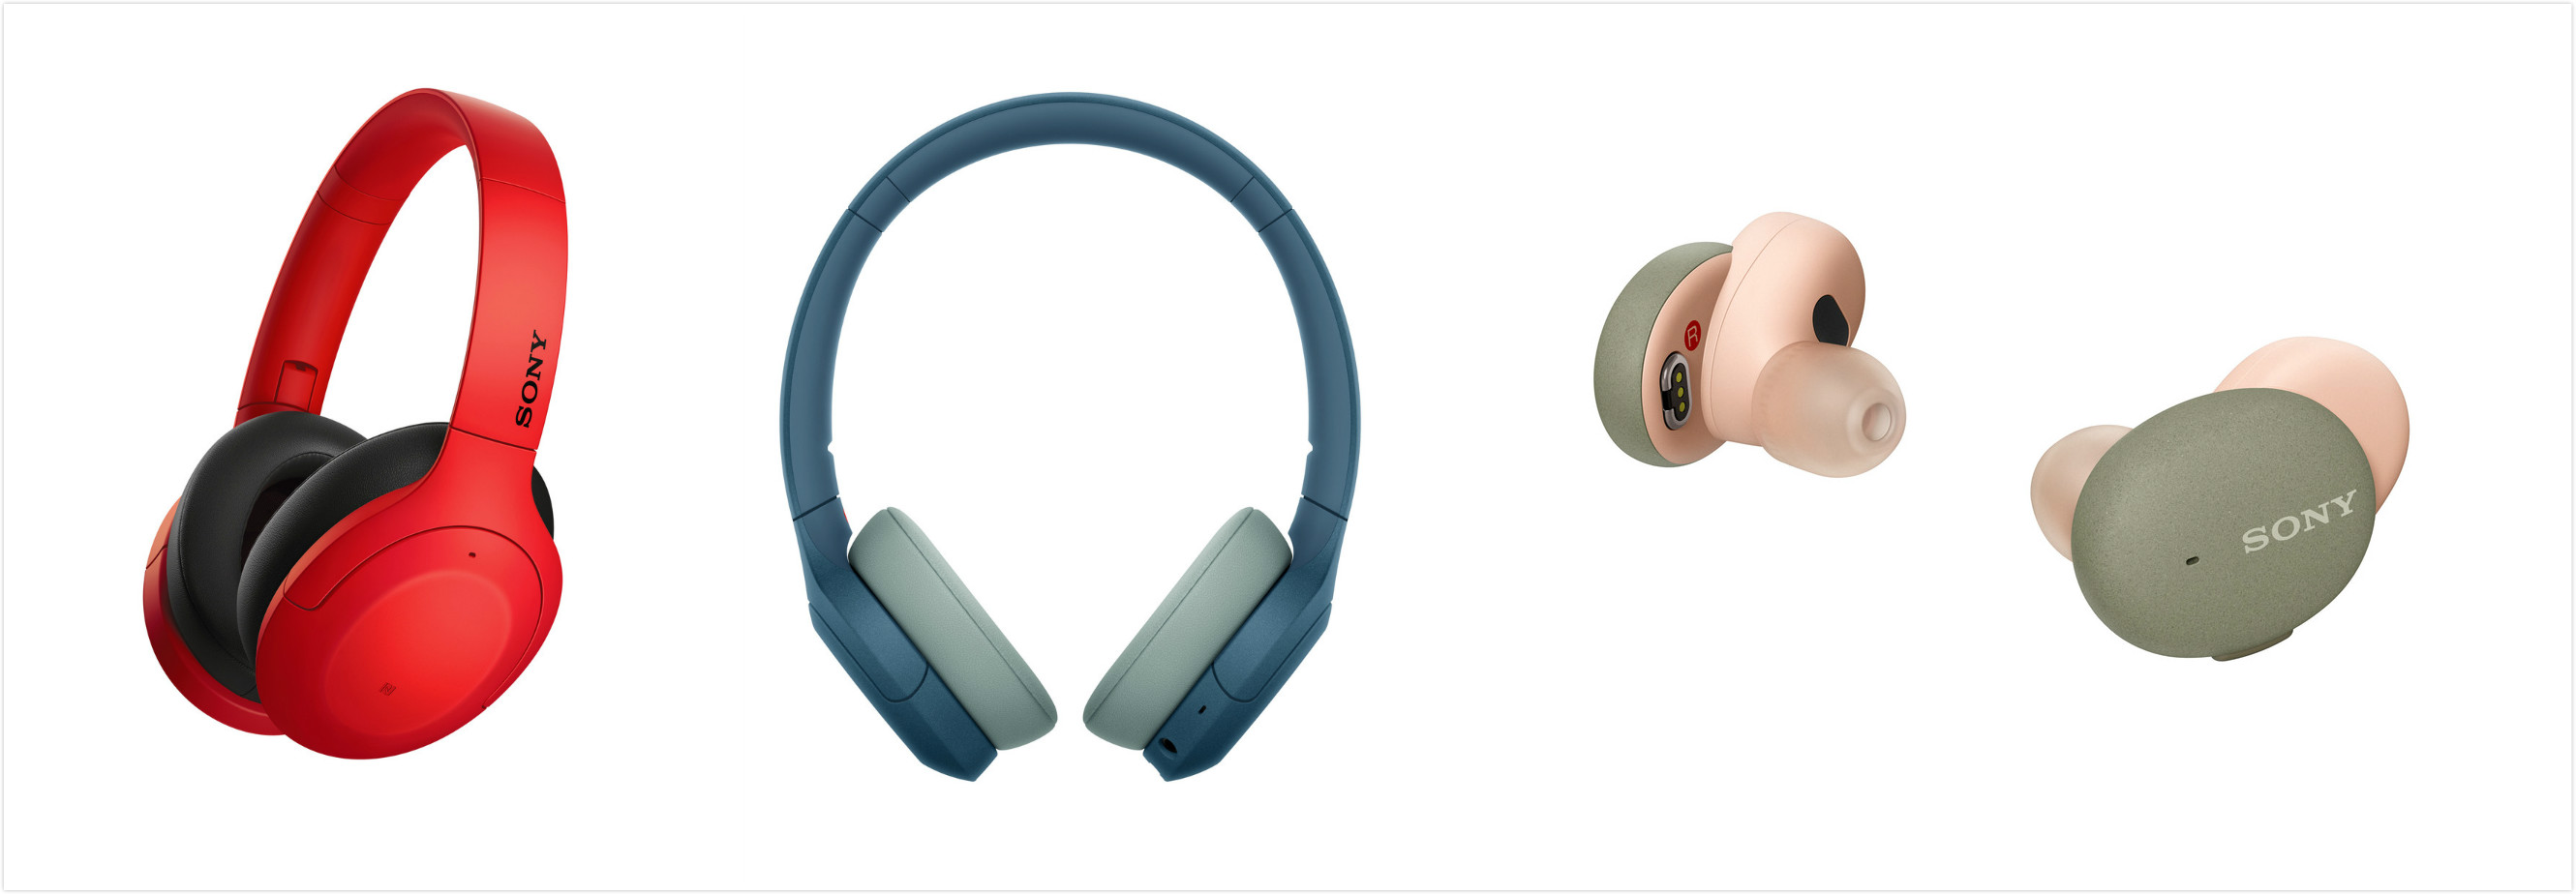 索尼发布h.ear新一代时尚系列耳机WH-H910N、WH-H810以及WF-H800